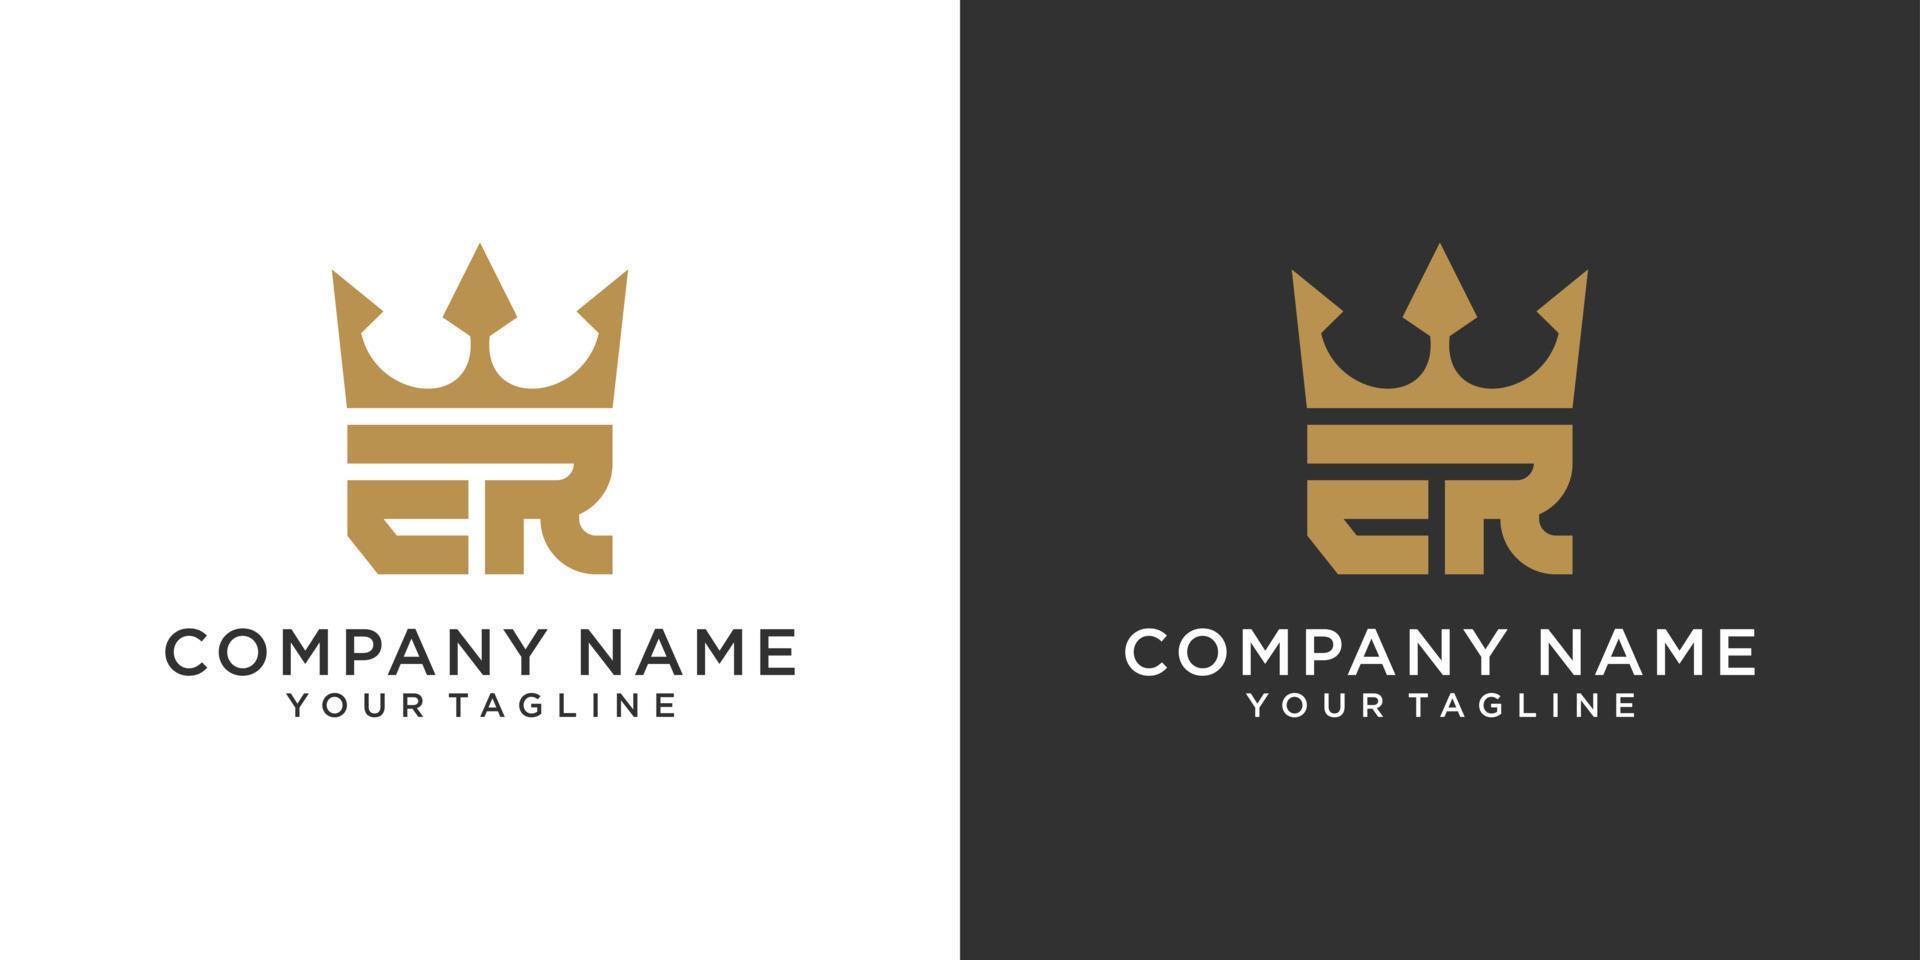 letra inicial er o re diseño de logotipo con vector de icono de corona.